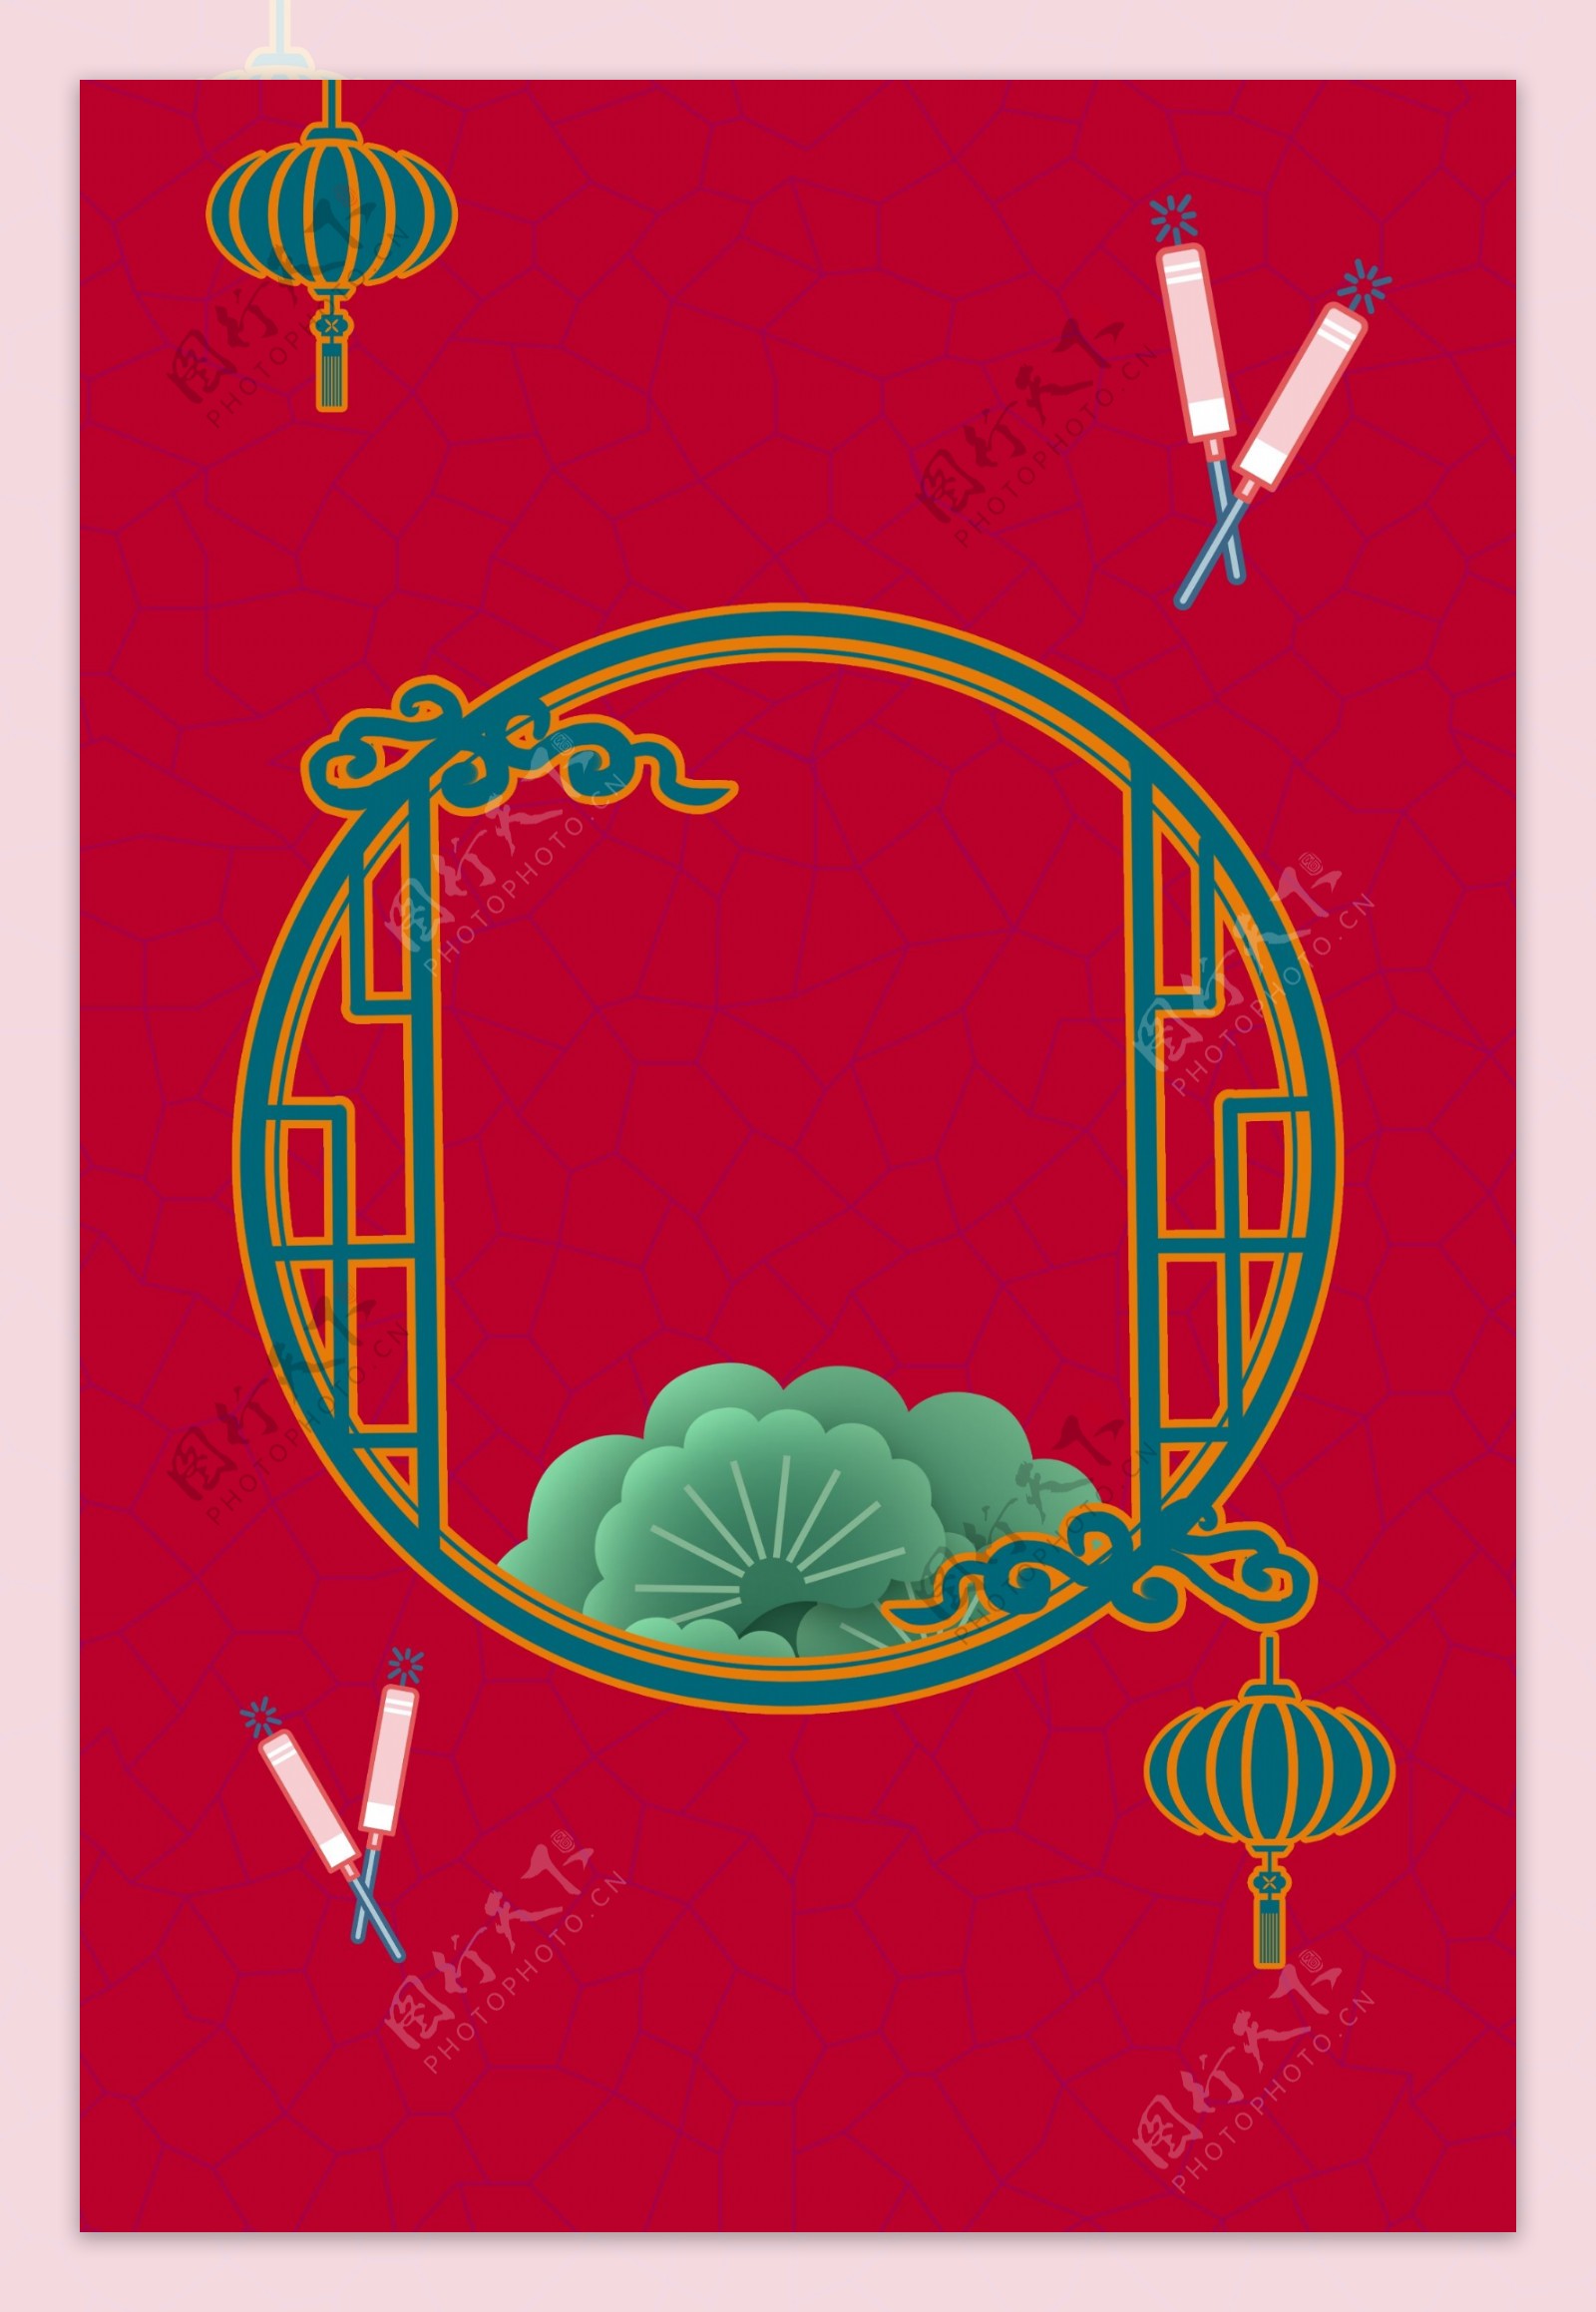 新式中国风窗棂新年签背景海报